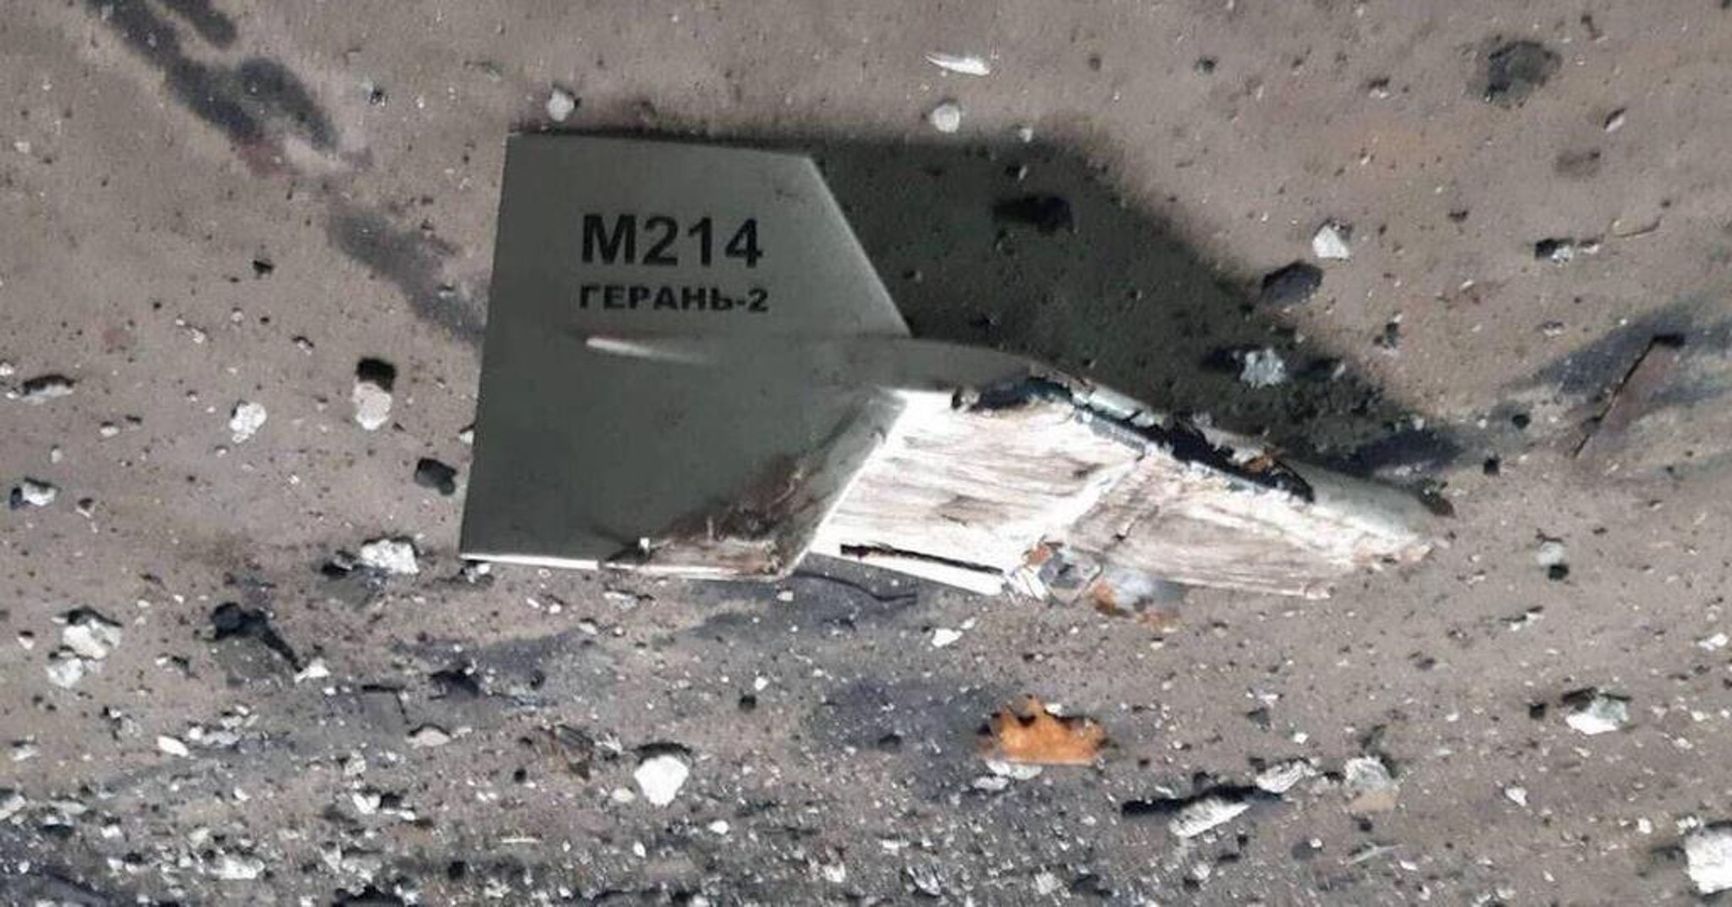 A Geran-2 drone shot down in Ukraine